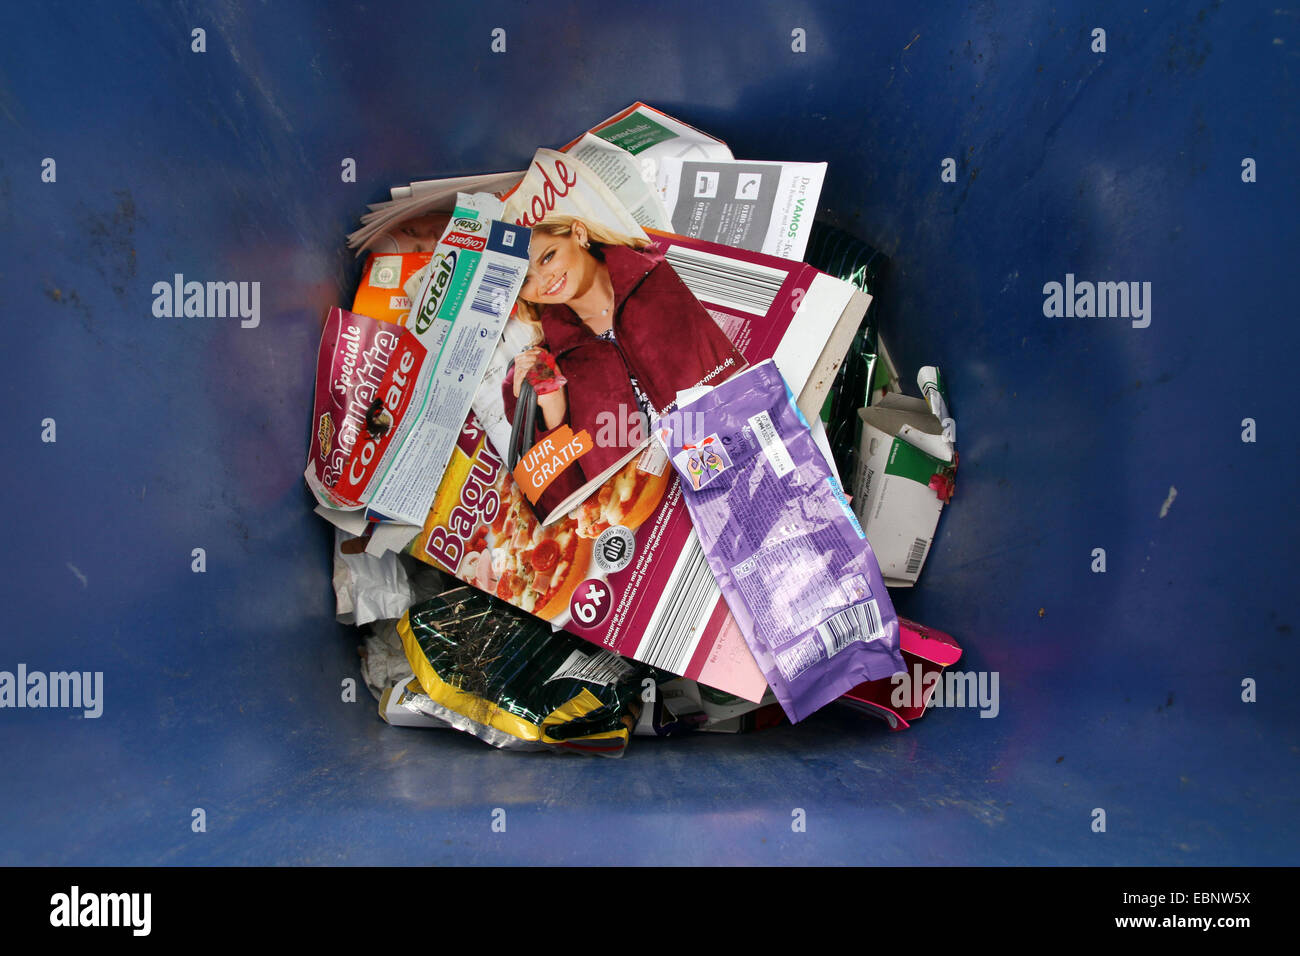 Voir dans un container de recyclage pour le papier, Allemagne Banque D'Images